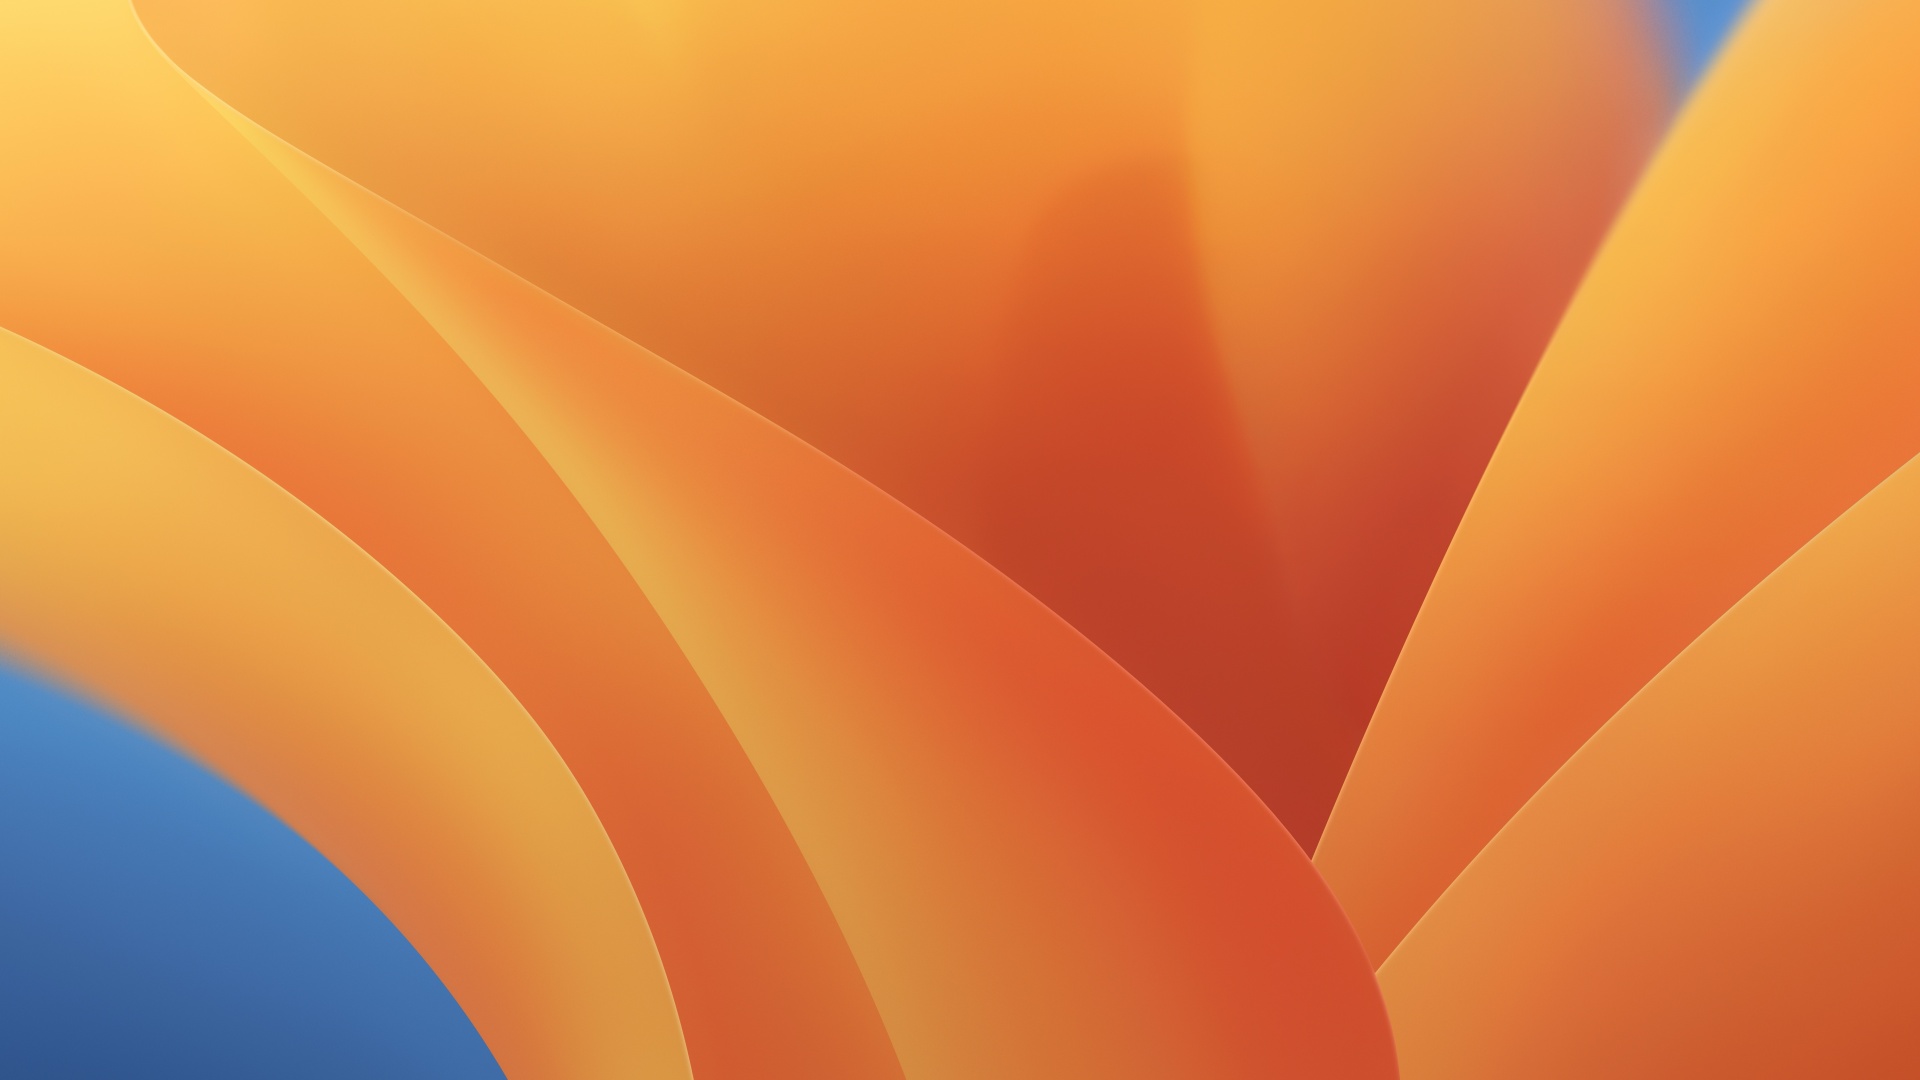 Thưởng thức hình nền mới nhất của Apple - macOS Ventura - mang đến một cảm giác thư giãn và thanh thản. Với thiết kế tối giản và những sắc màu độc đáo, hình nền sẽ làm cho màn hình của bạn trở nên đẹp hơn và tạo nên sự khác biệt bạn mong muốn.